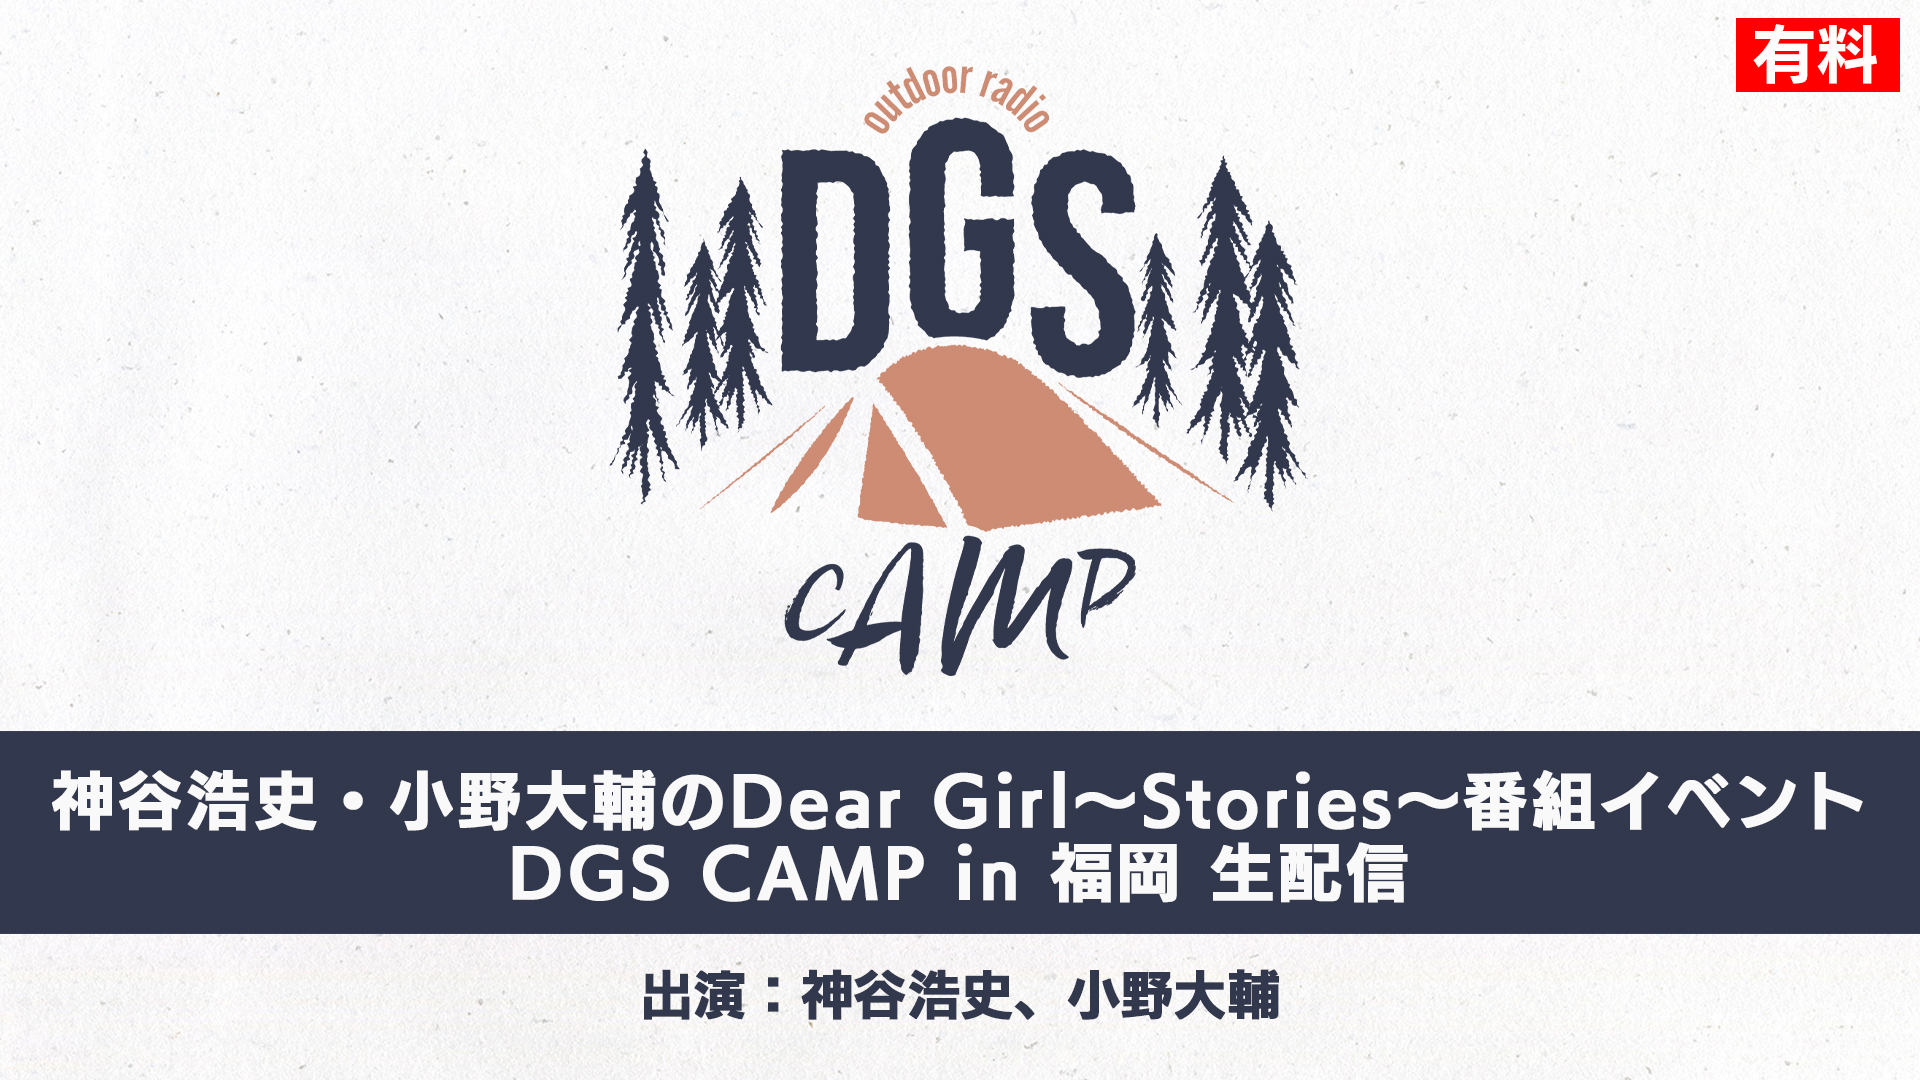 神谷浩史・小野大輔出演 DGS CAMP in 福岡